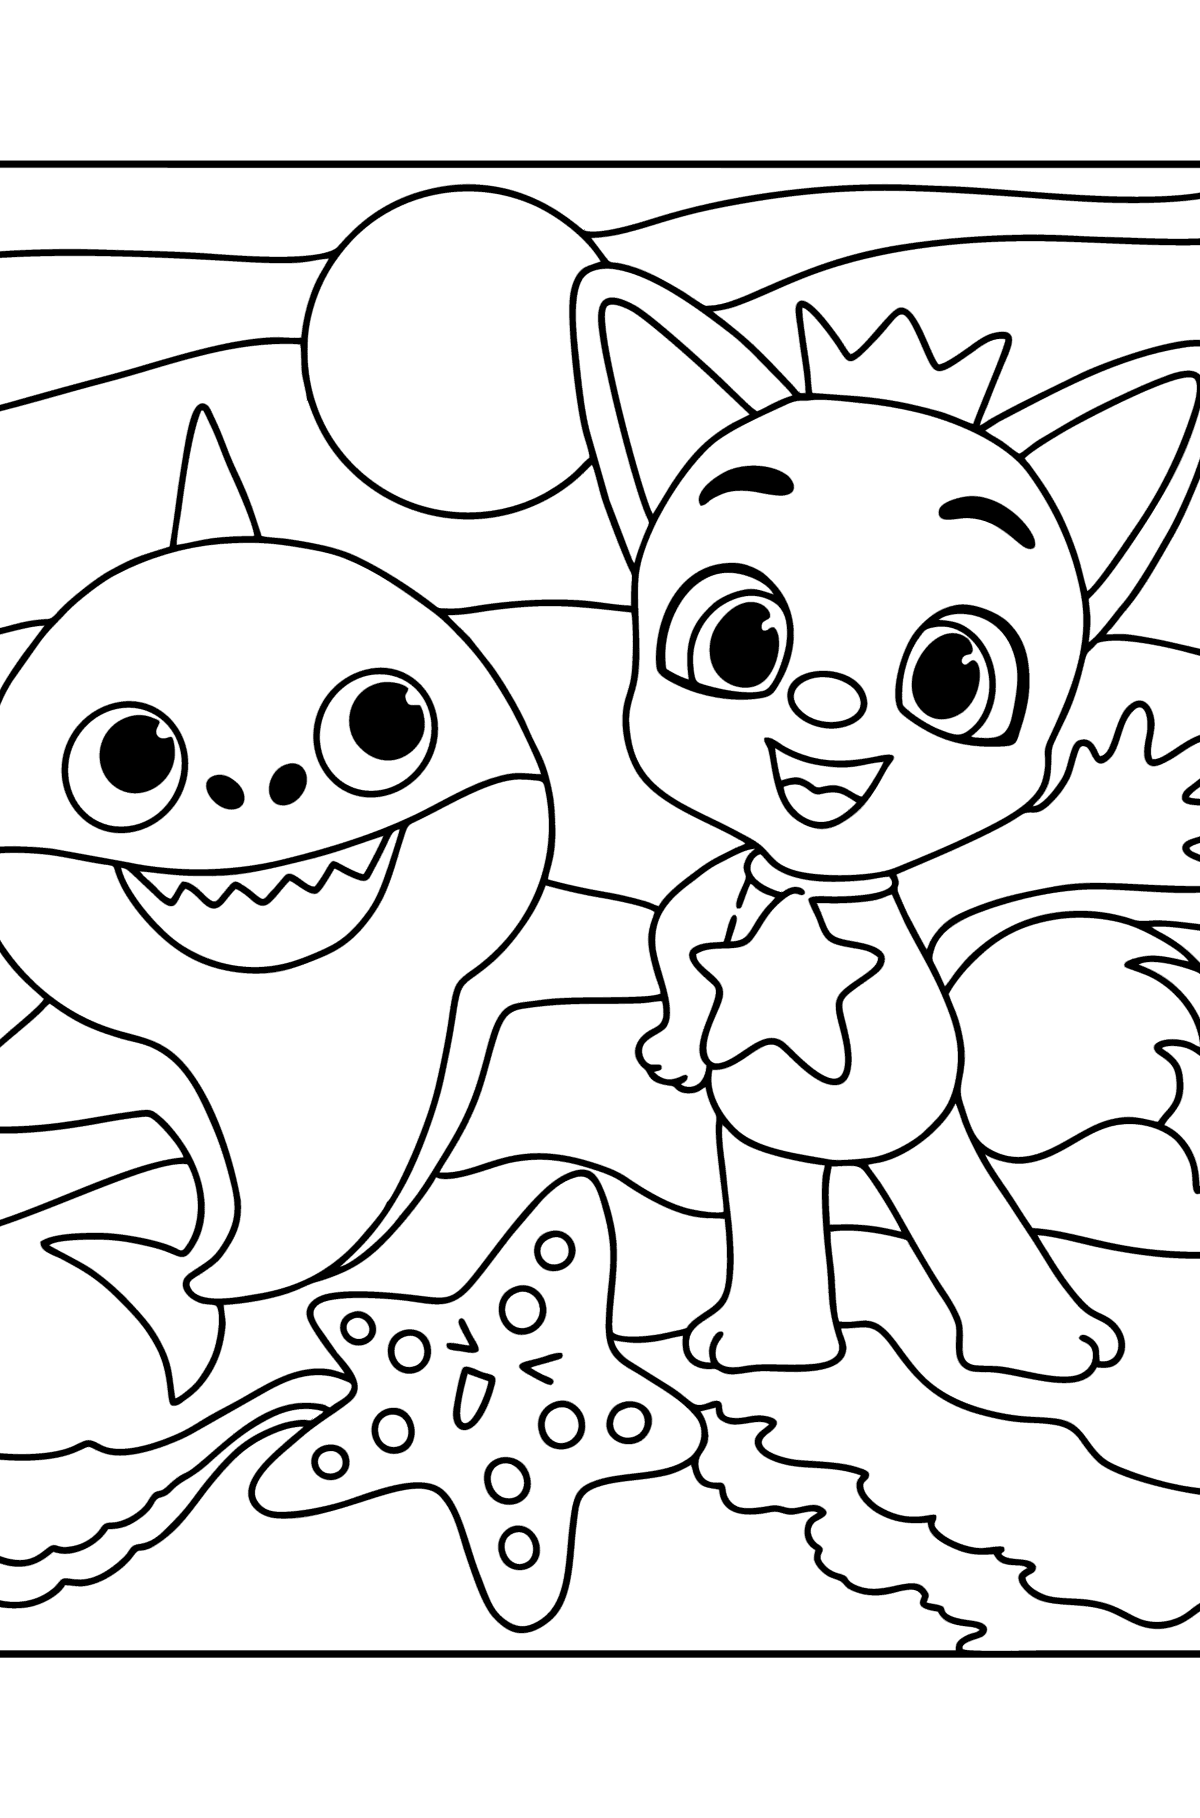 Pinkfong Baby Shark boyama sayfası - Boyamalar çocuklar için